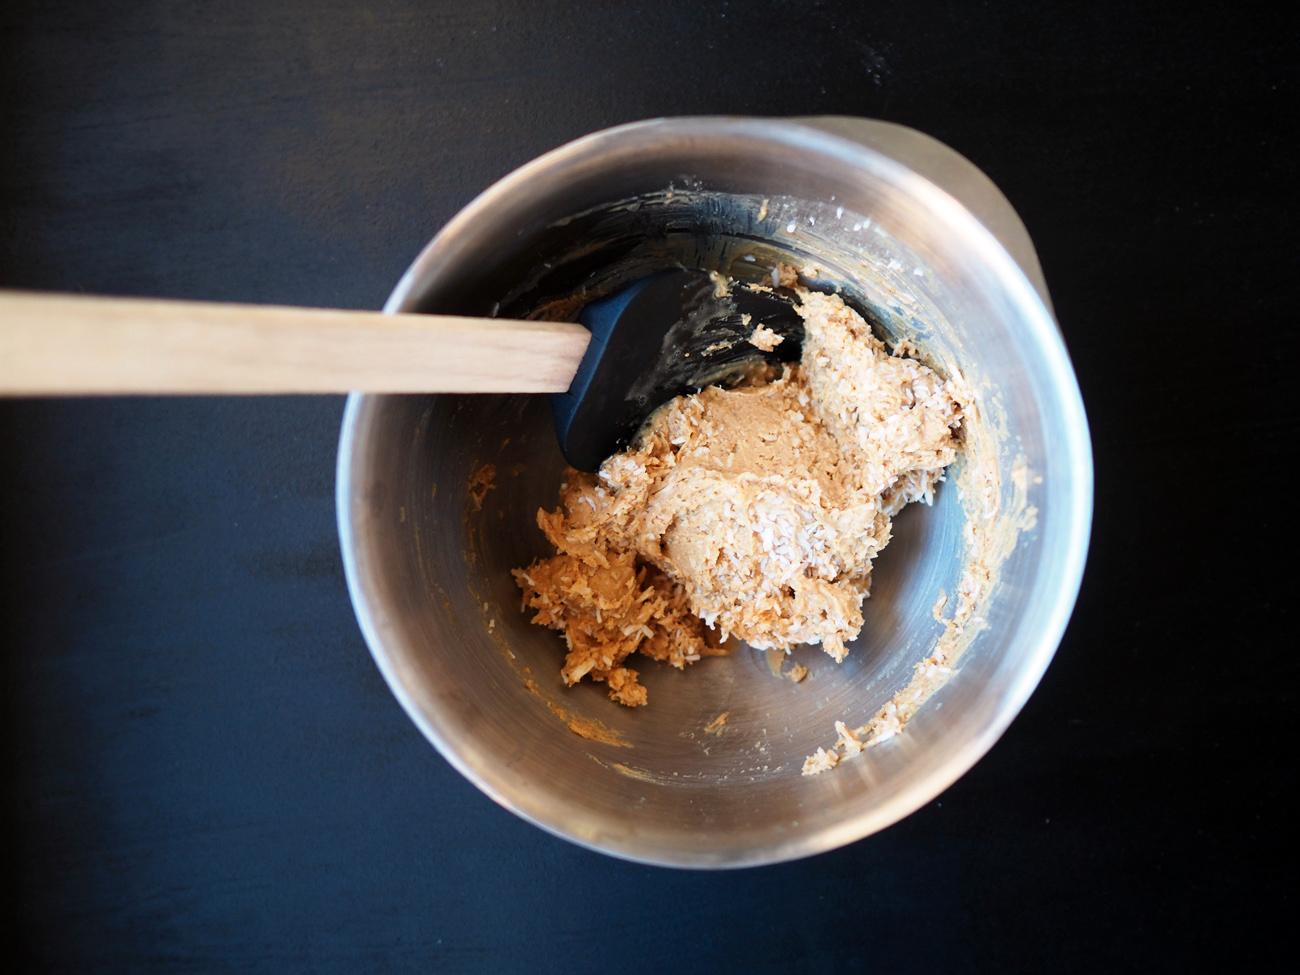 Tilsett vaniljepulver, kanel og salt og bland godt. Rør så inn 2 dl kokos, eller til massen er fast og formbar. Spar 1/2 dl til å rulle kulene i.